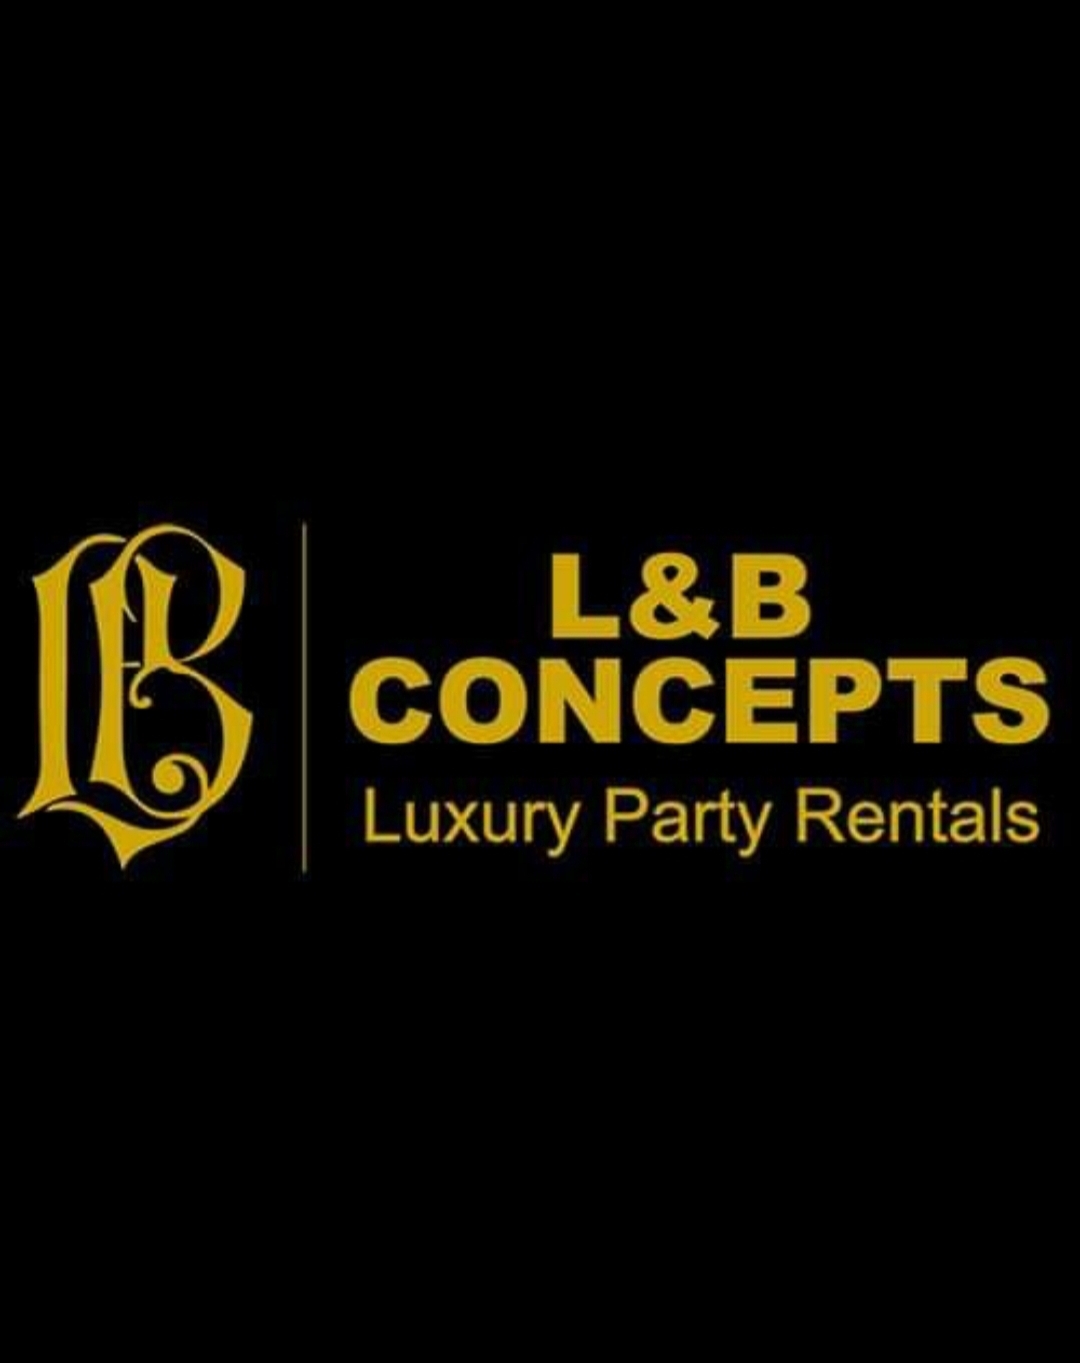 L & B Concepts